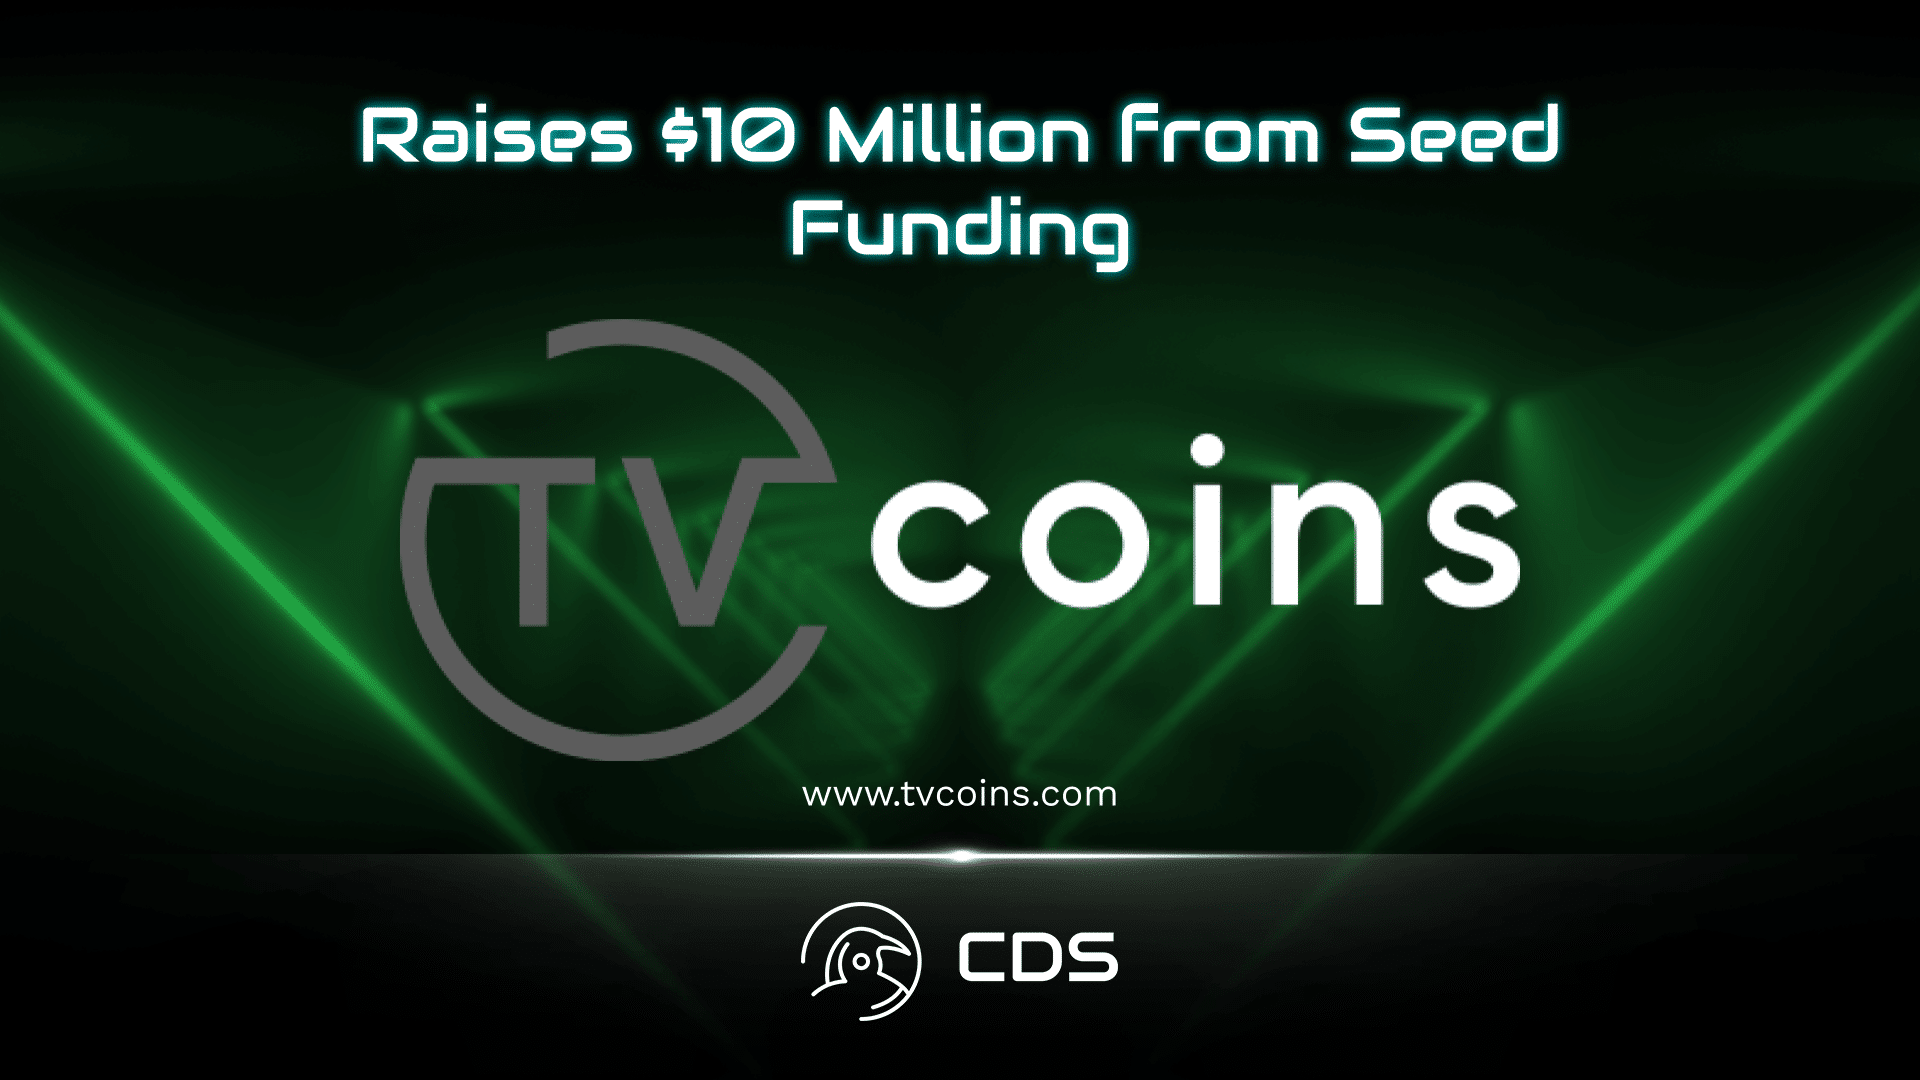 TV Coins Raises $10 Million